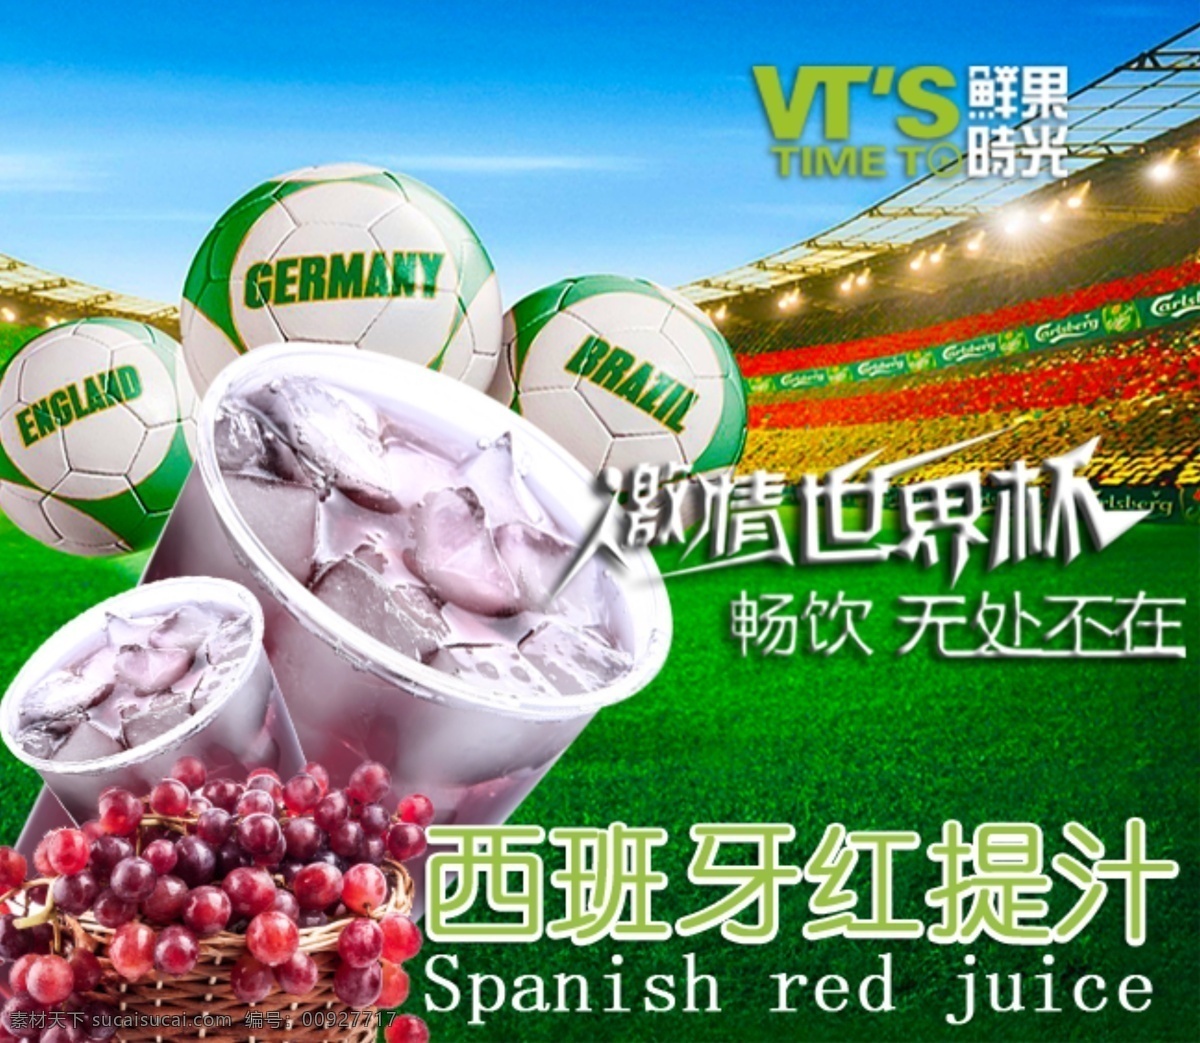 世界杯 奶茶 促销 海报 促销海报 鲜果时光 足球 西班牙红提汁 原创设计 原创海报